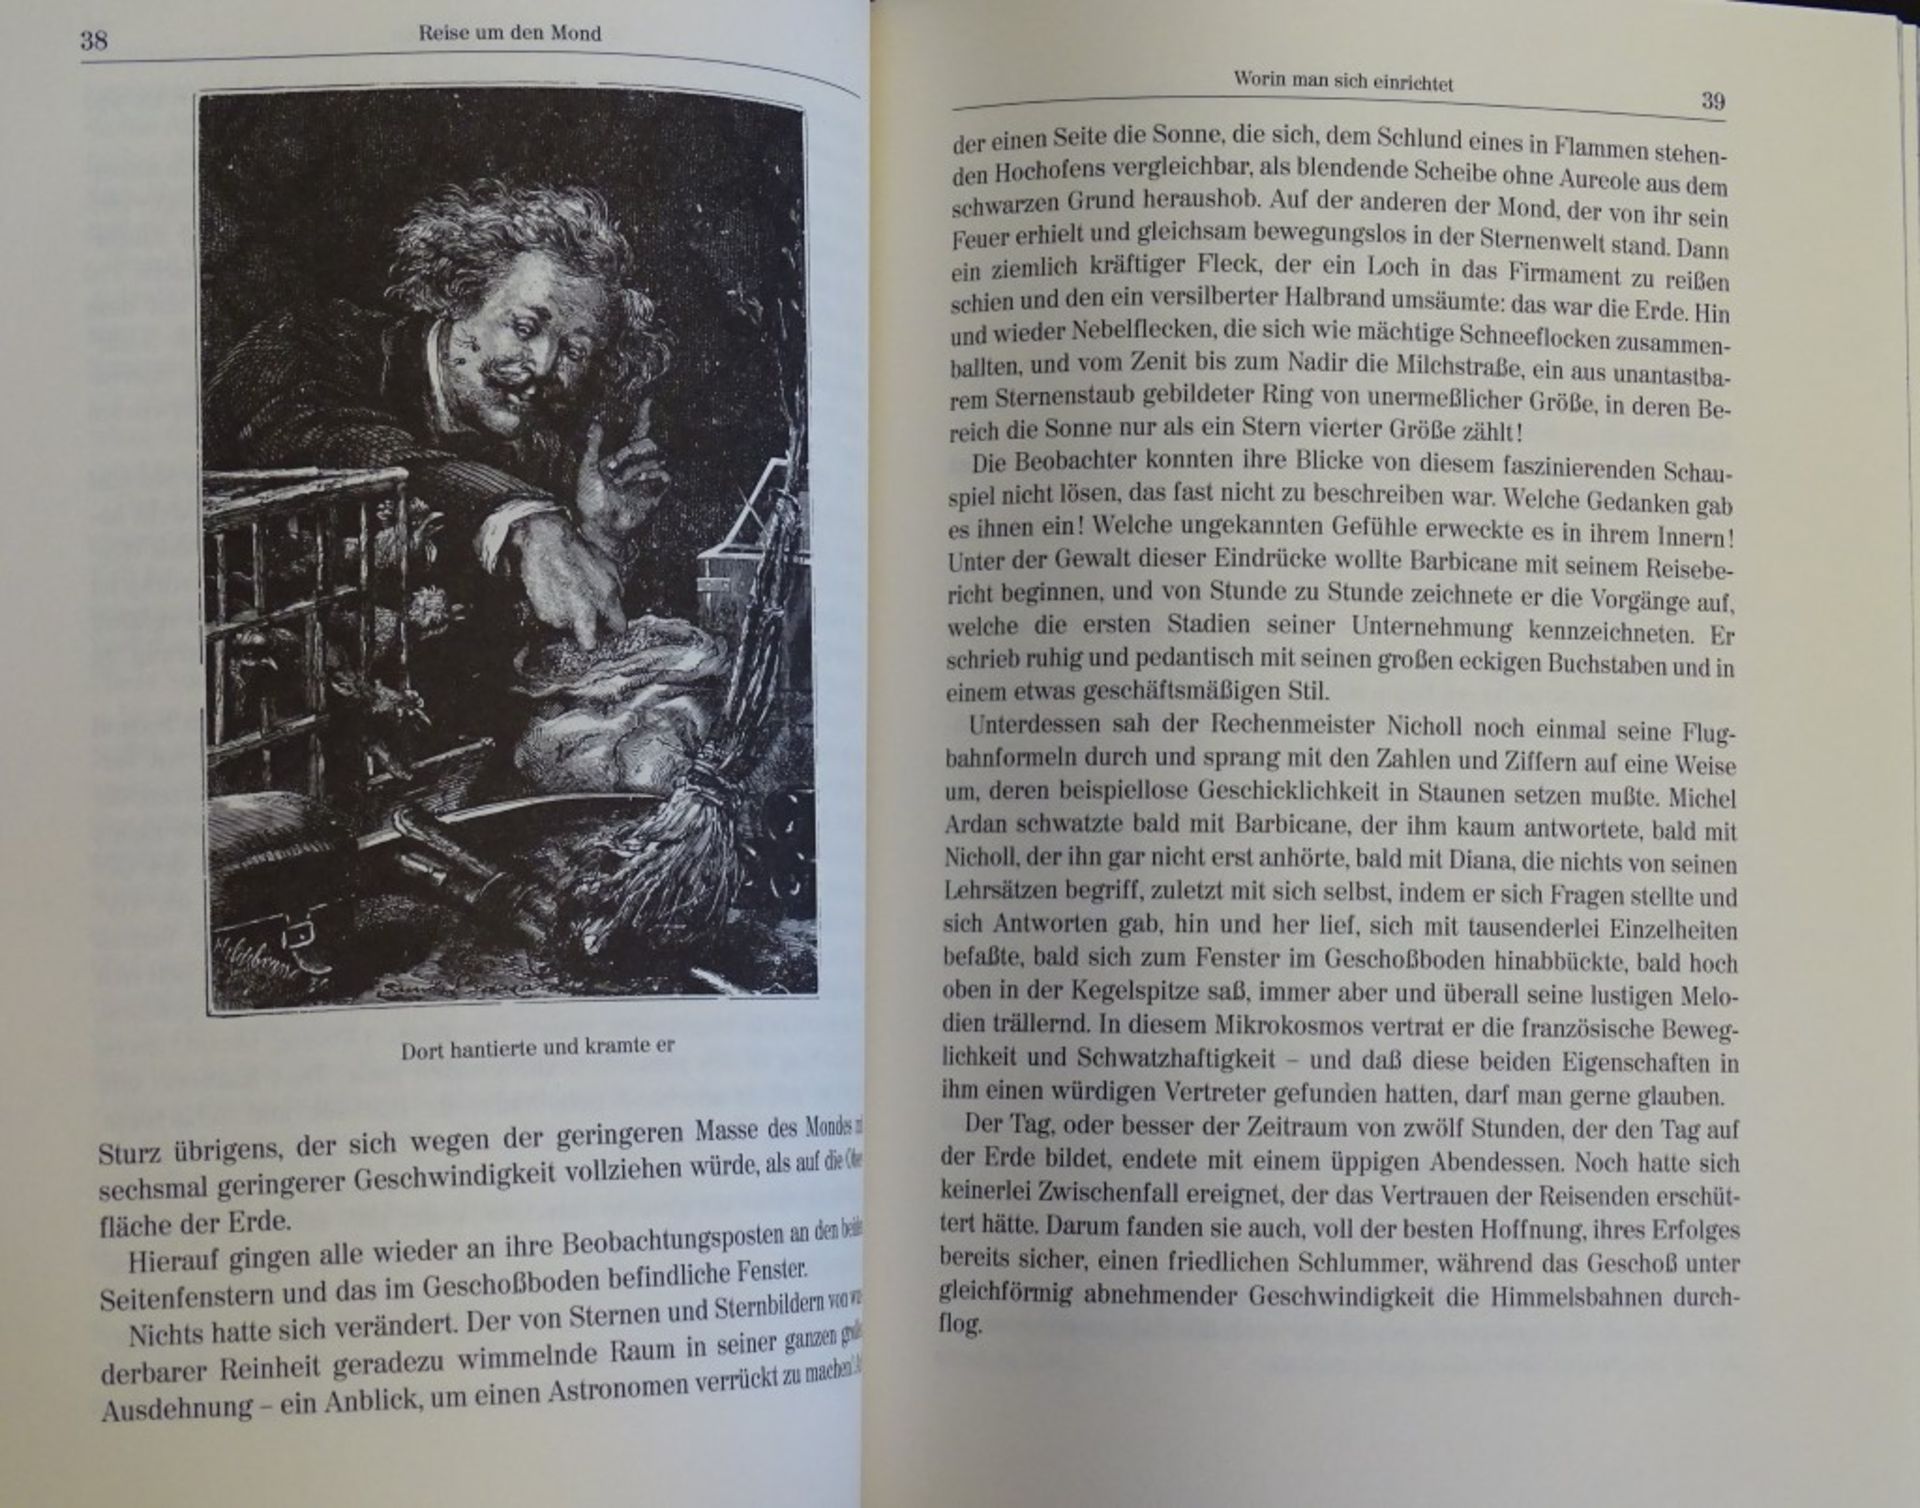 Julius Verne Bücher, "Mathias Sandorf,Reise um den Mond,die großen Seefahrer - Bild 8 aus 10